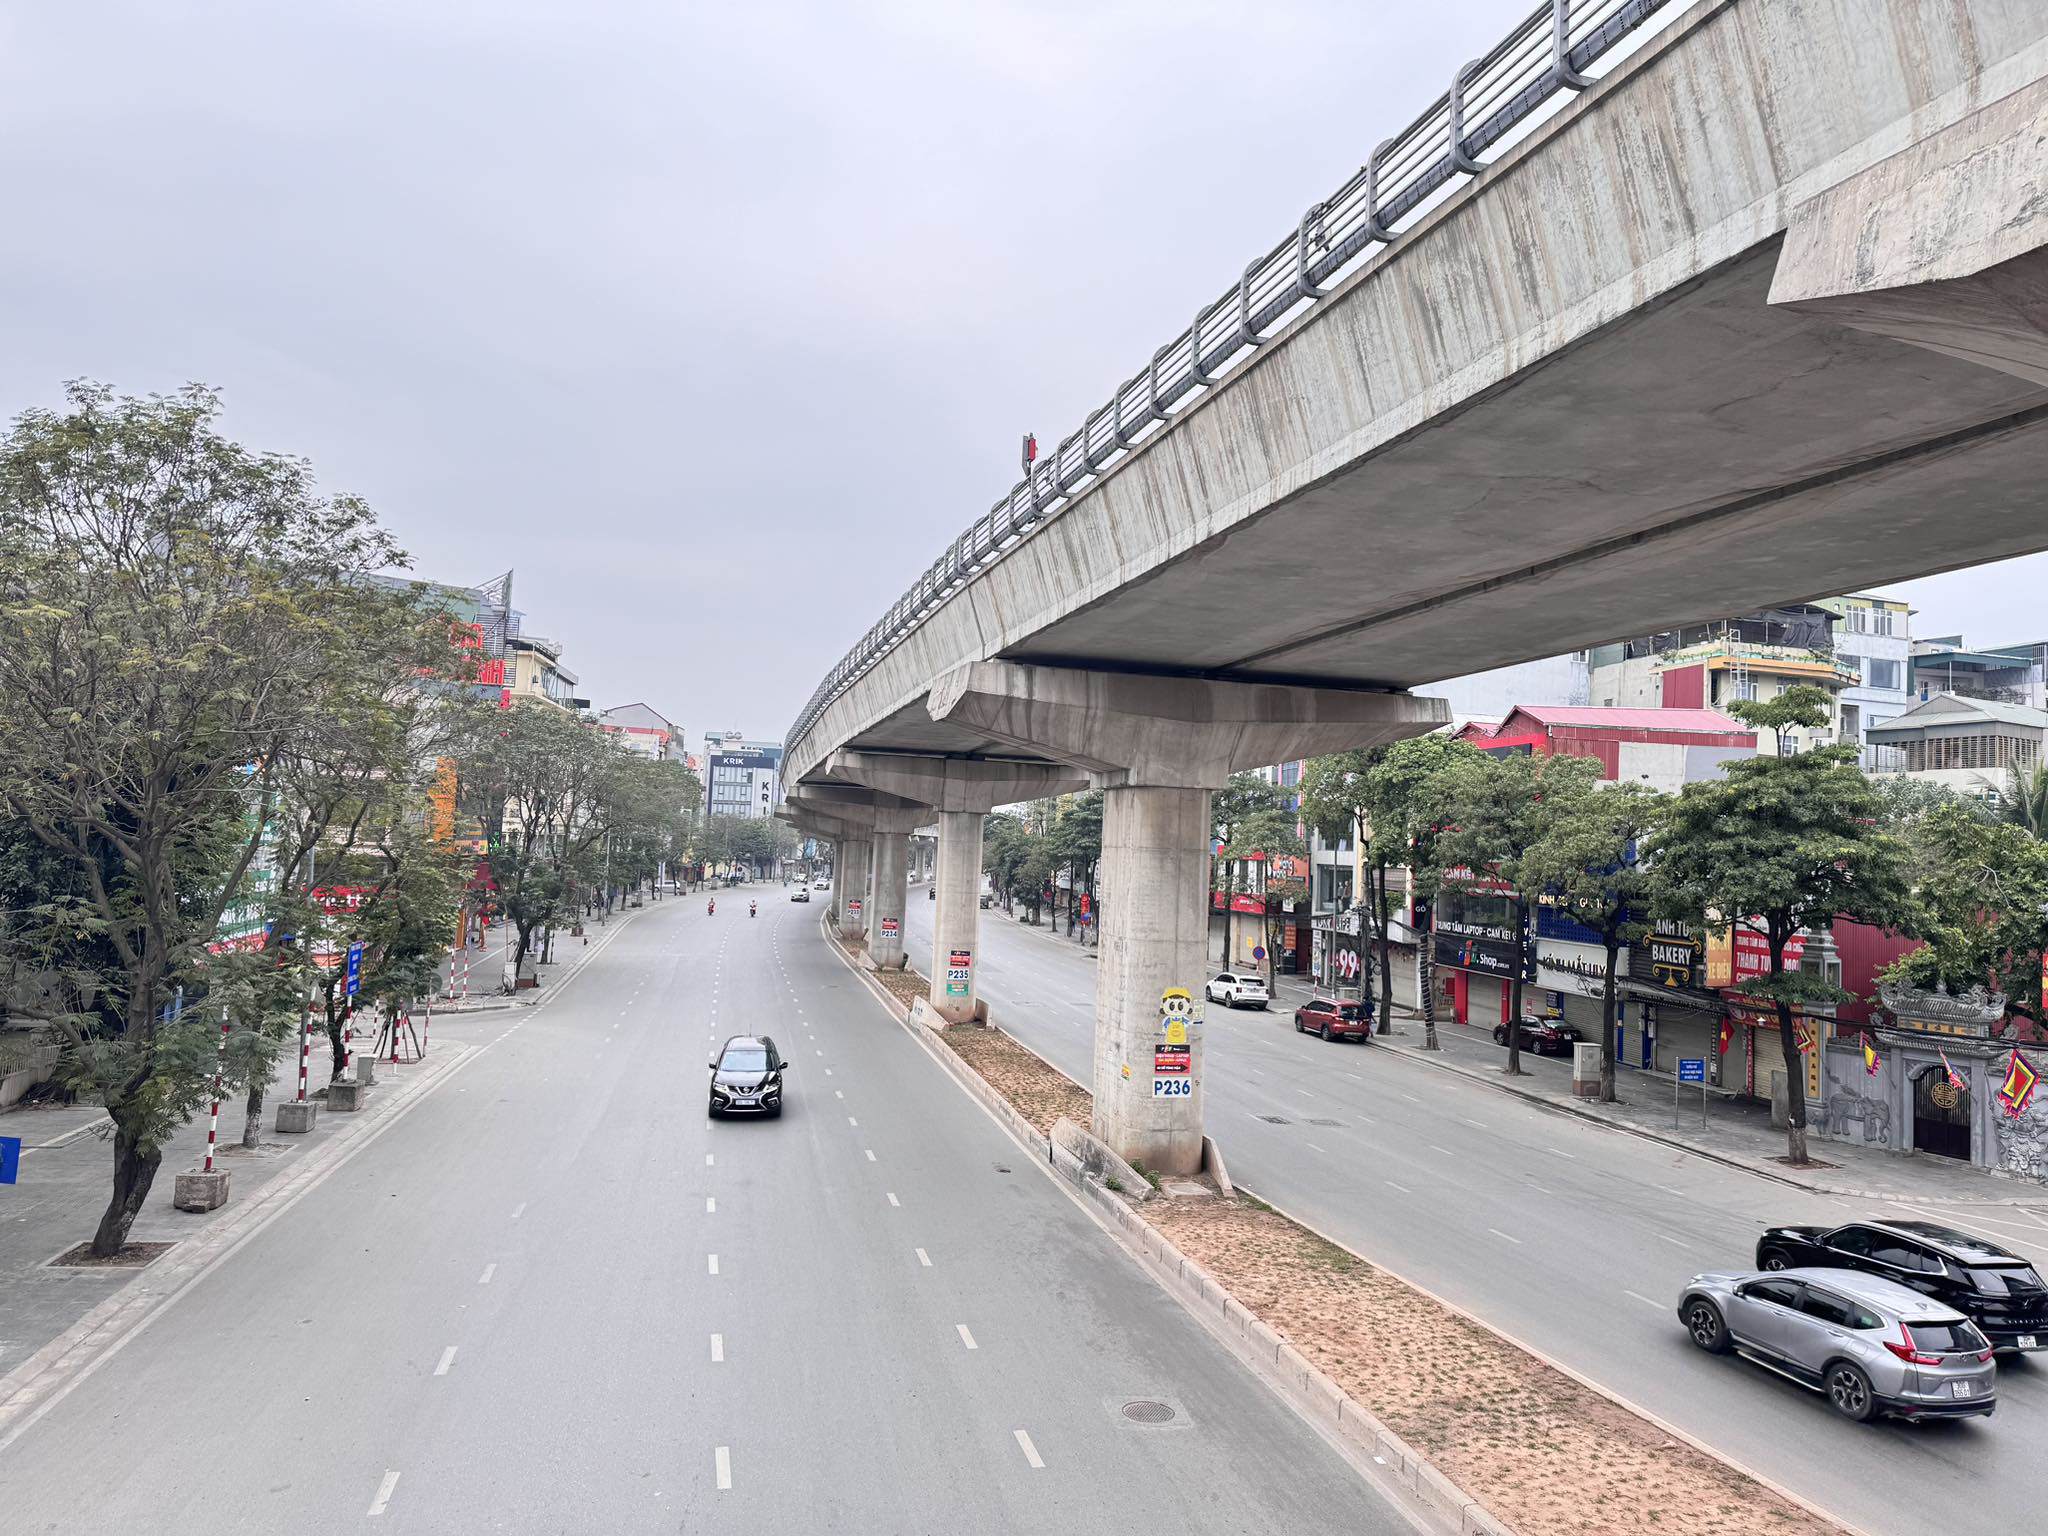 Sáng 10/1 (tức mồng 1 Tết Nguyên đán Giáp Thìn), các tuyến đường phố Hà Nội đều vắng vẻ, tĩnh lặng, trái ngược hoàn toàn với mọi ngày. Ảnh chụp lúc 8h30 sáng trên đường Cầu Diễn và Hồ Tùng Mậu.